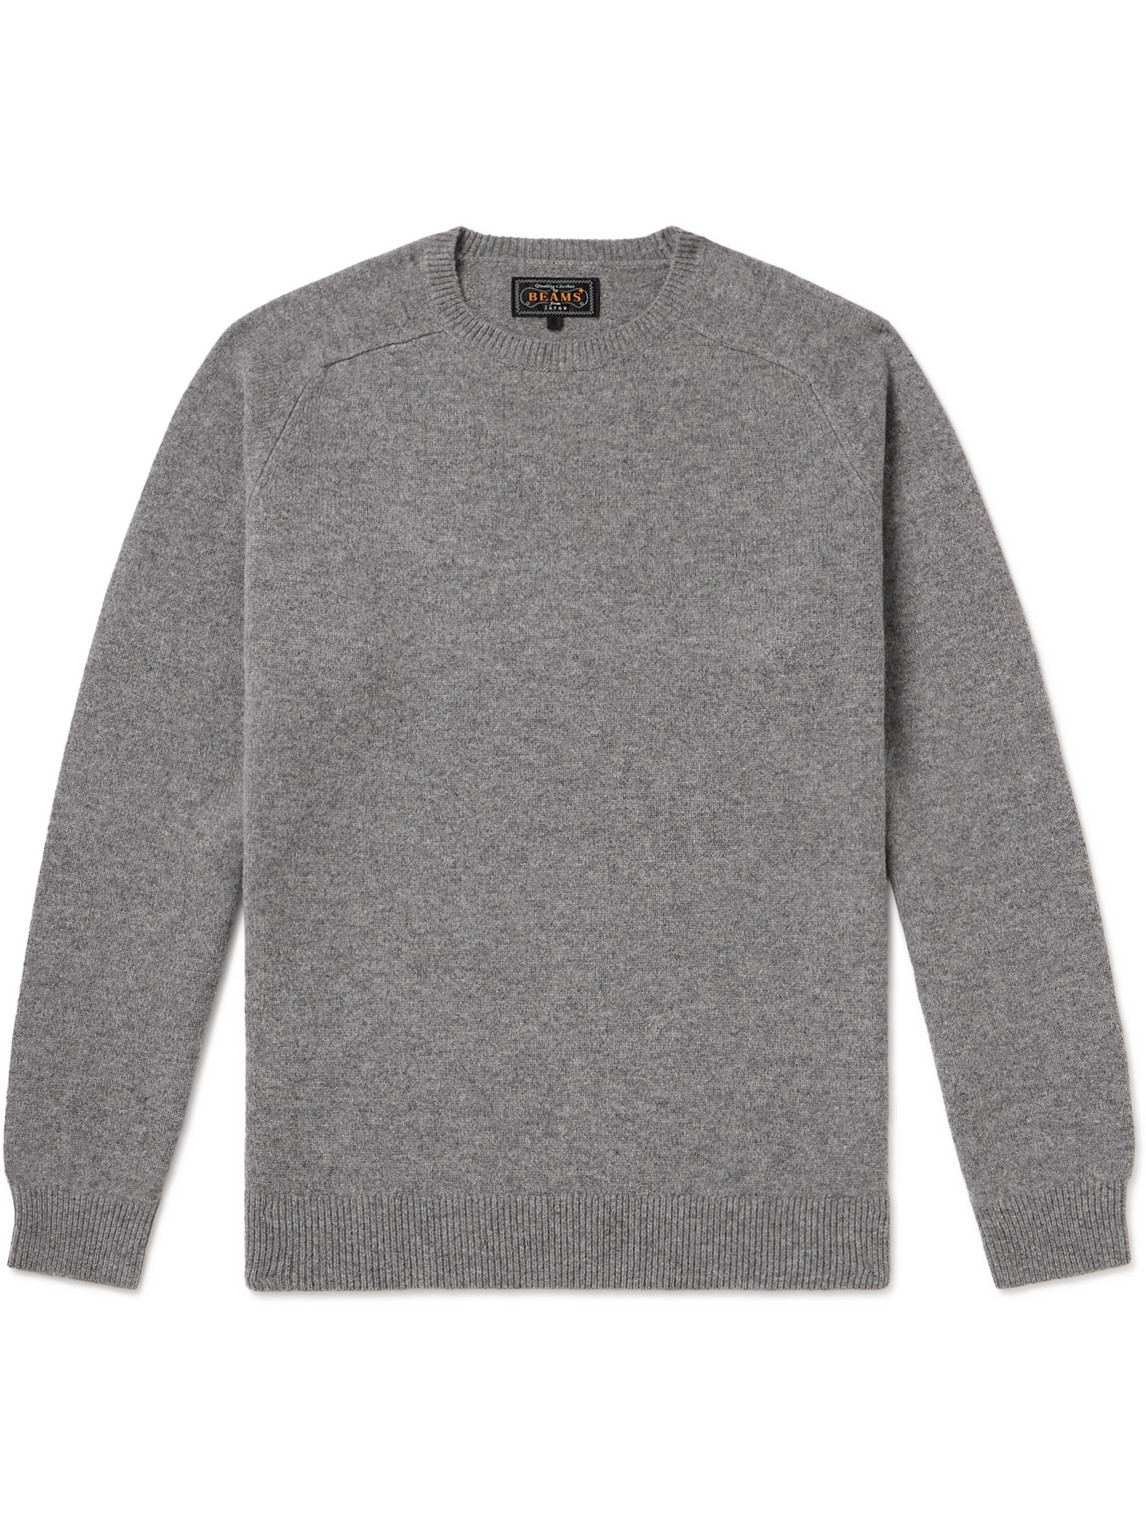 Beams Wool Jumper In Grey